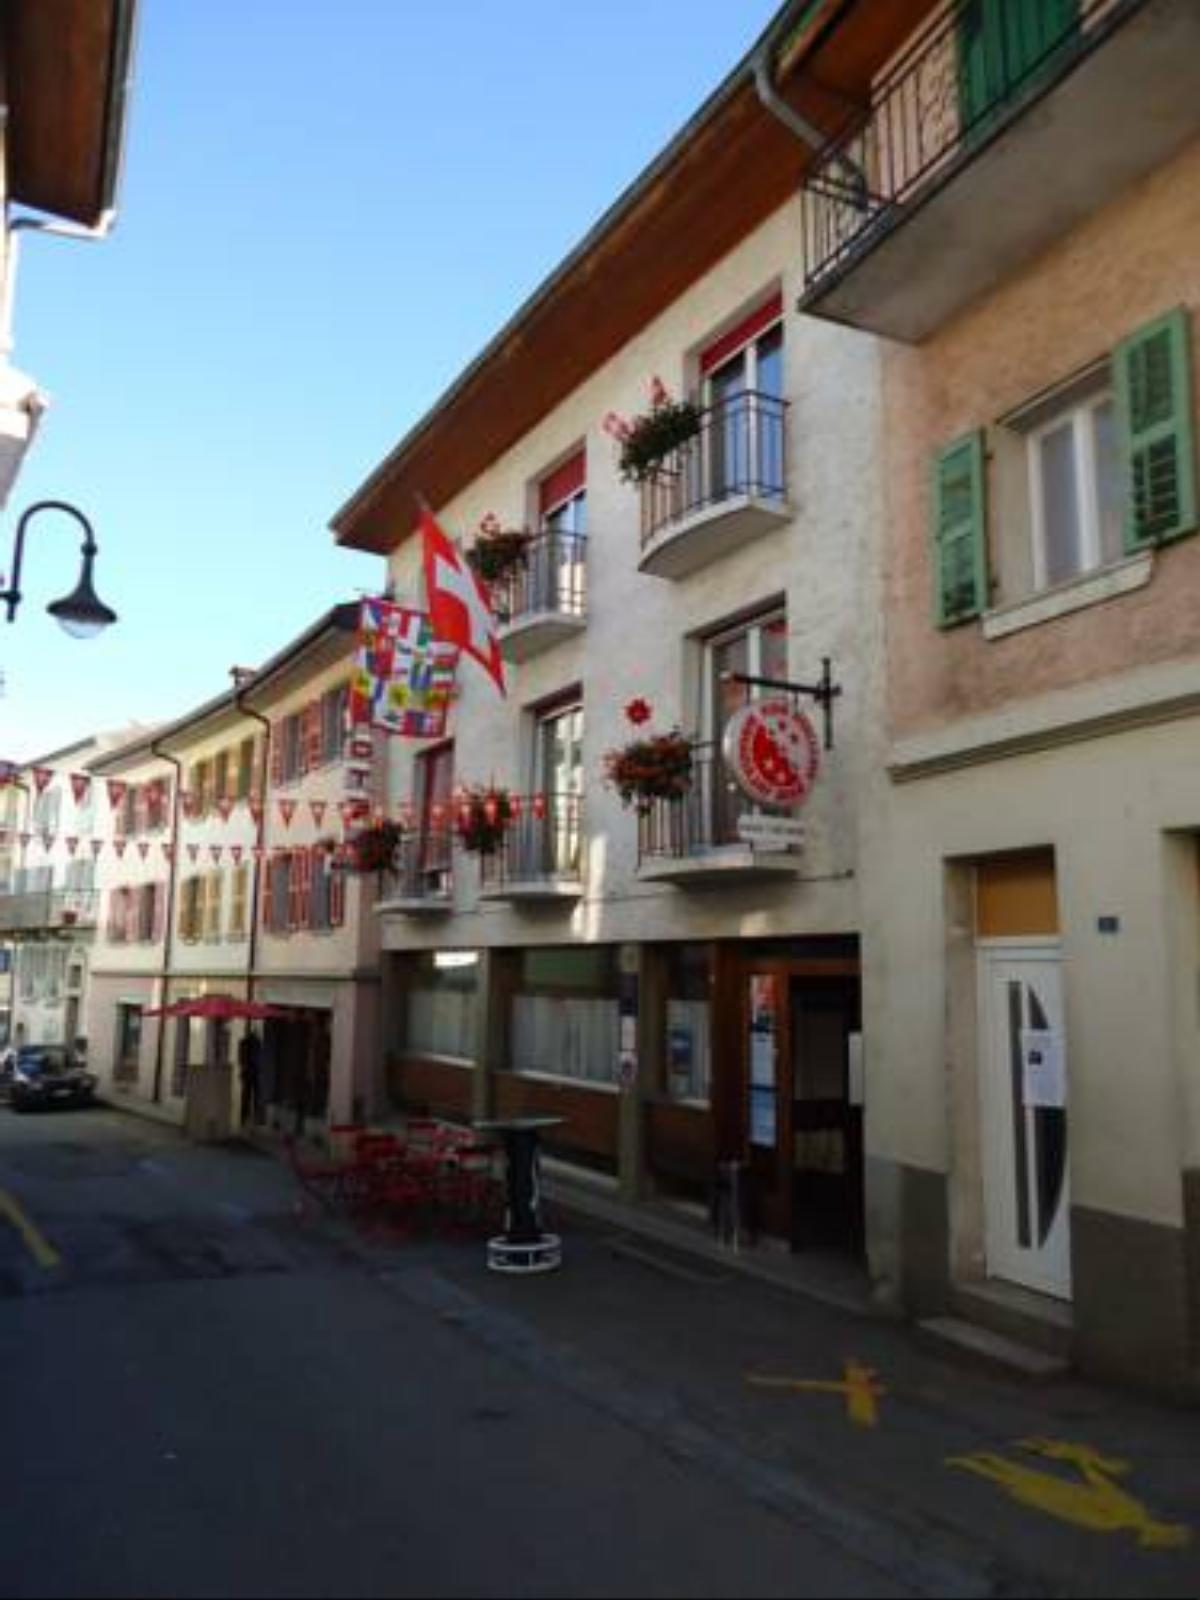 Hotel de l'Union Hotel Orsières Switzerland